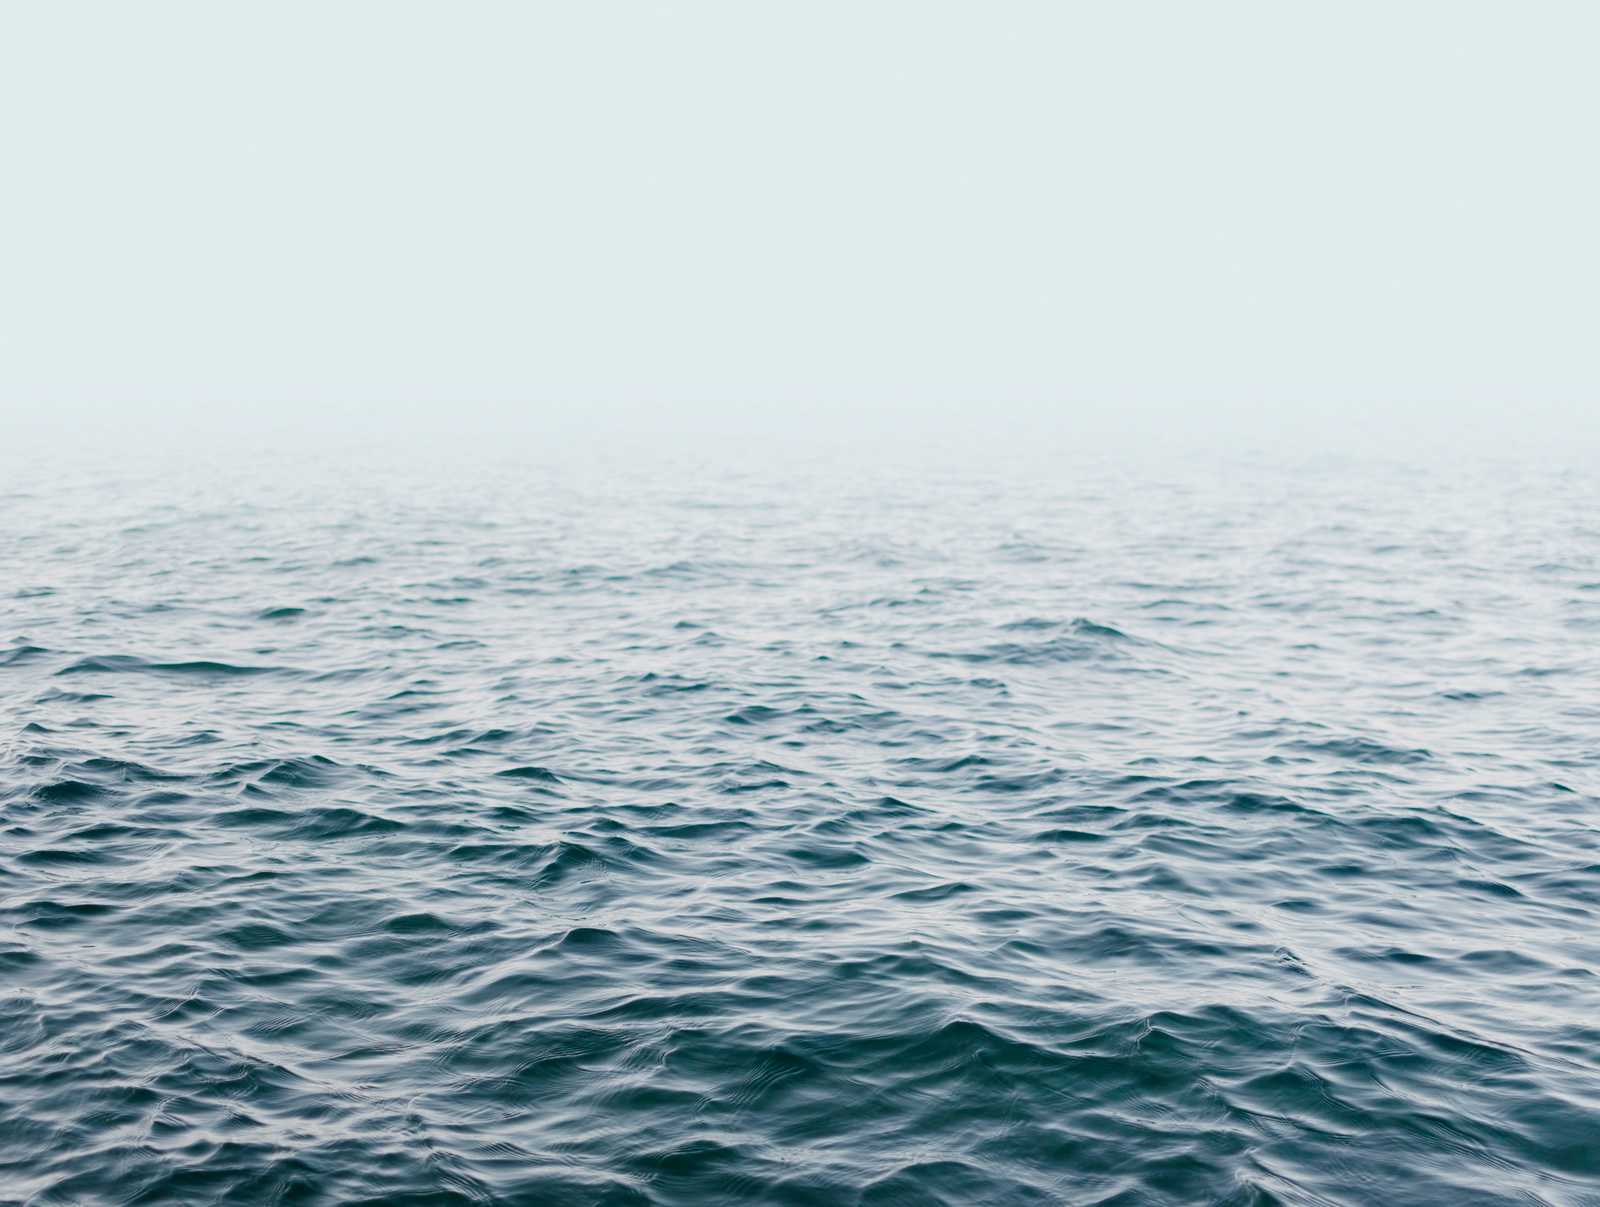             behang nieuwigheid | motief behang zee zonder horizon, blauwe tinten
        